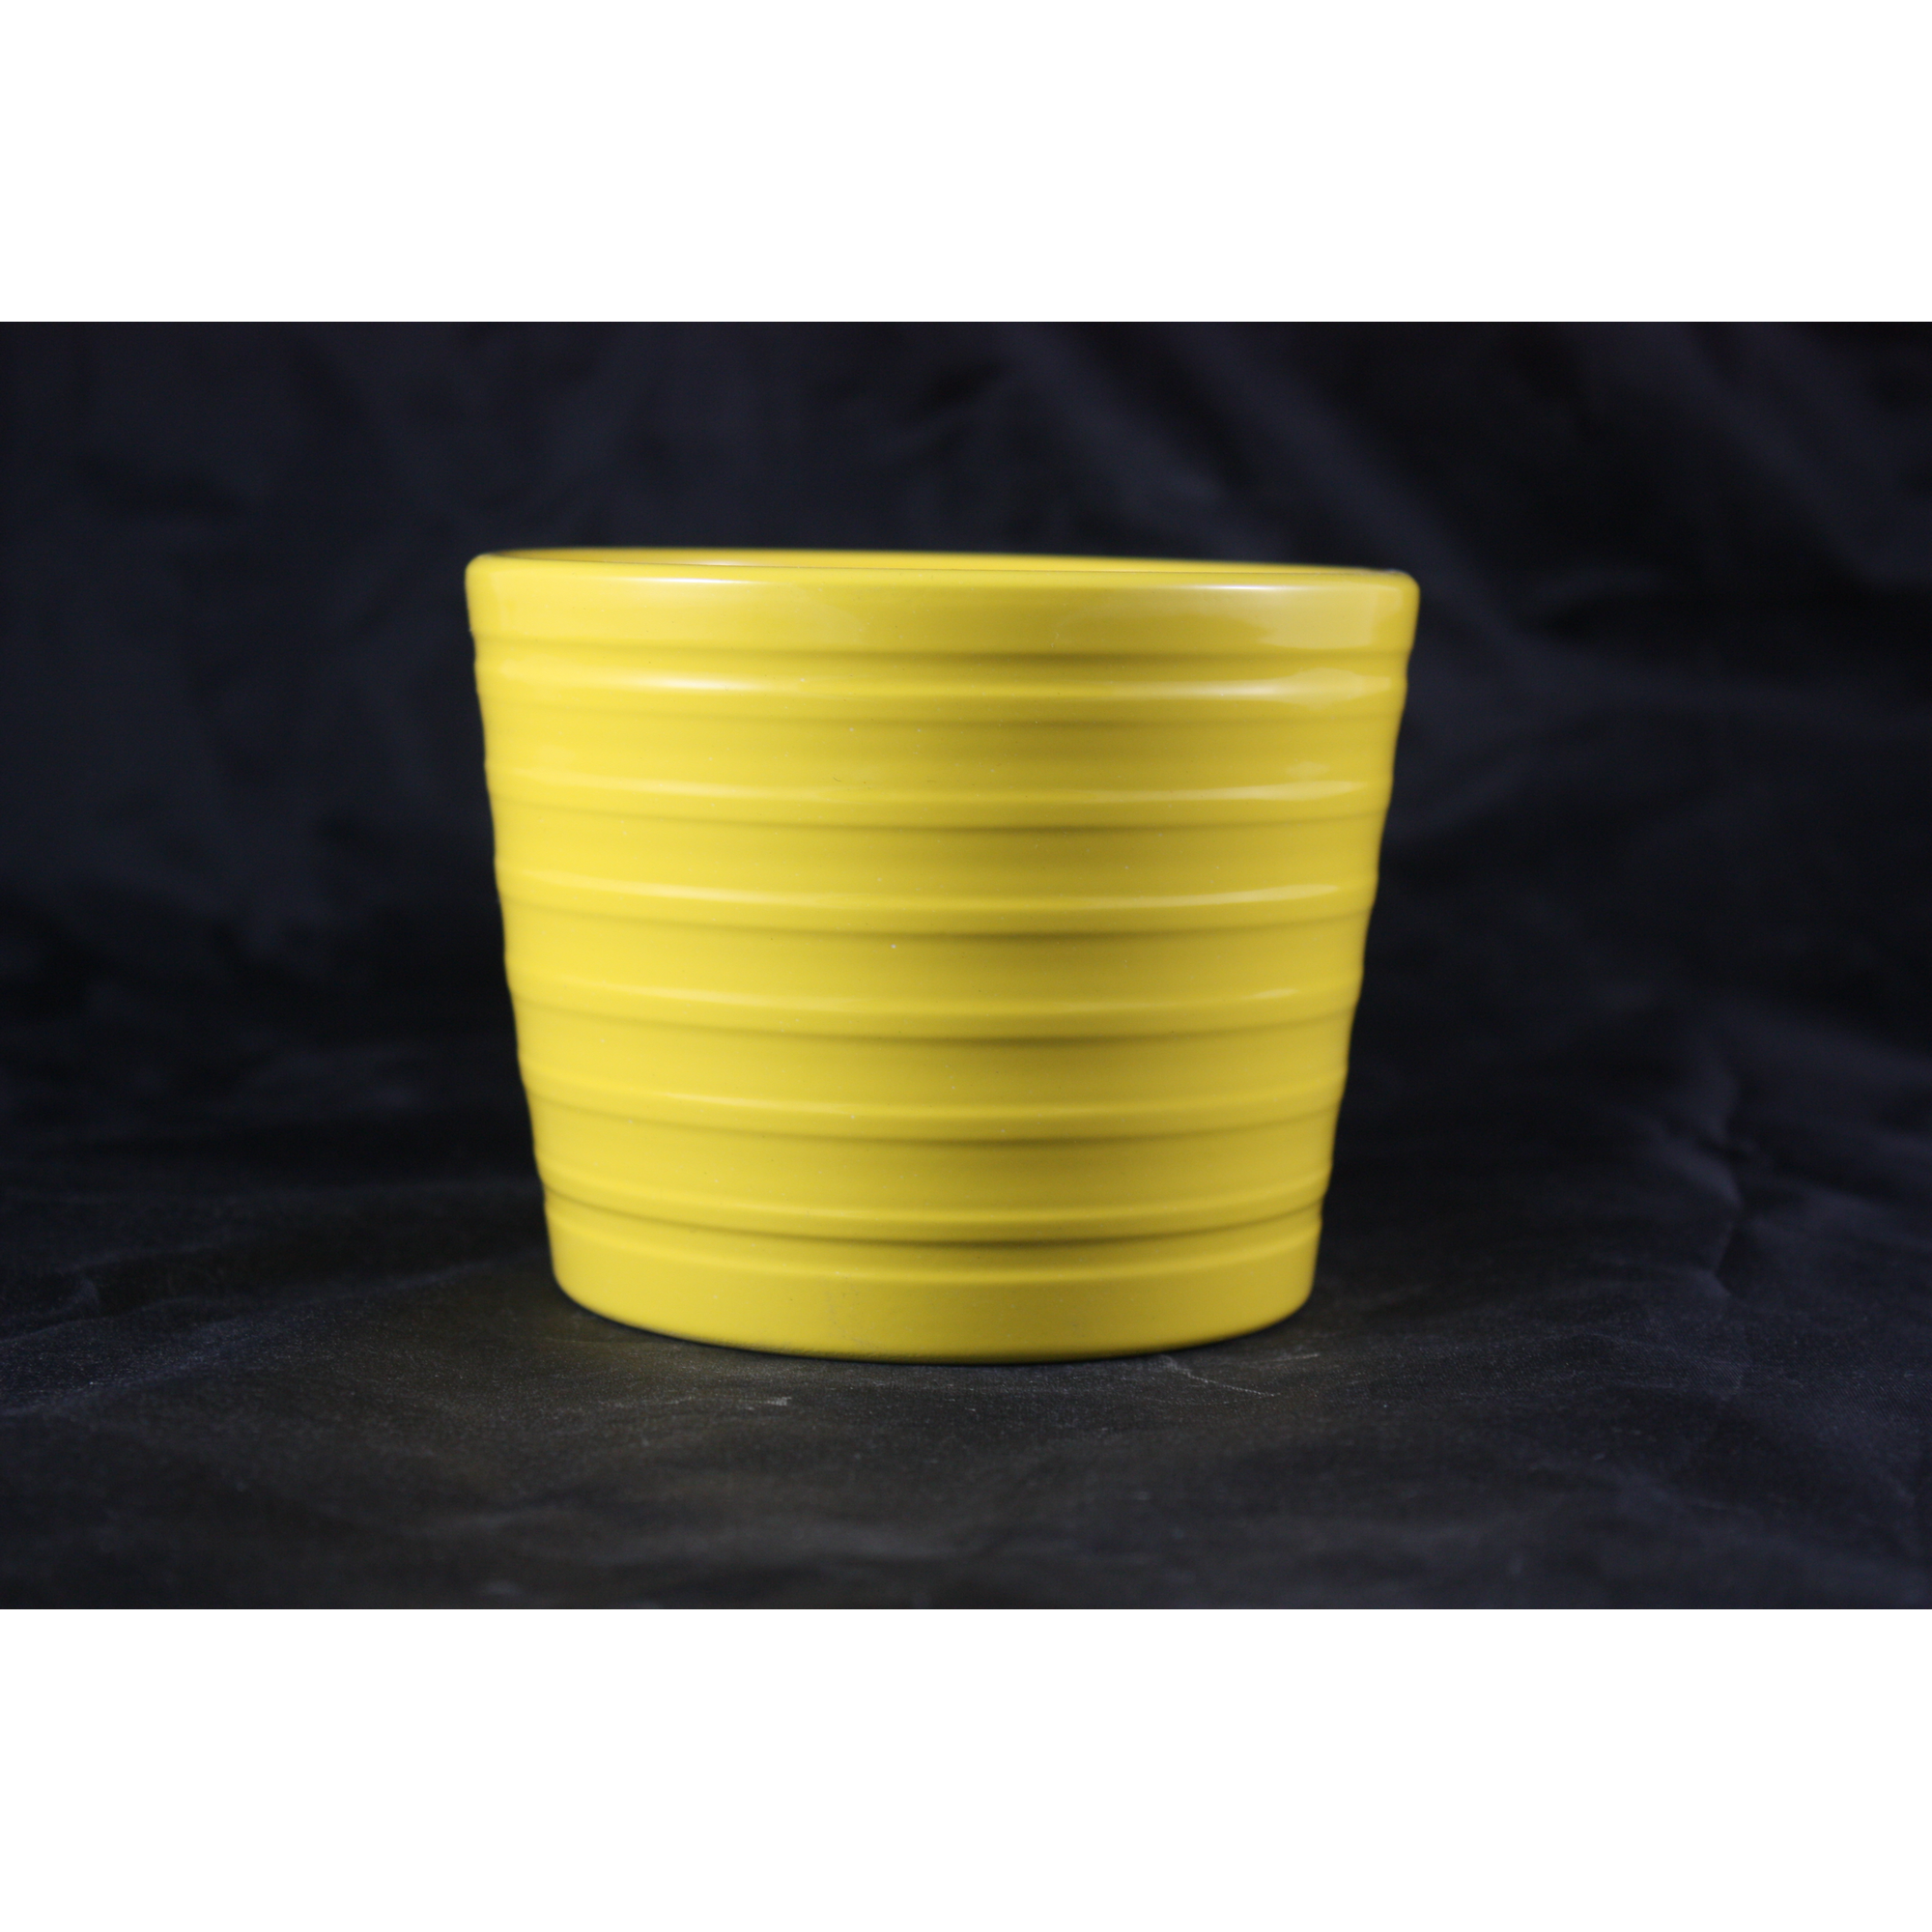 Keramiktopf 'Laide' gelb 11cm + product picture